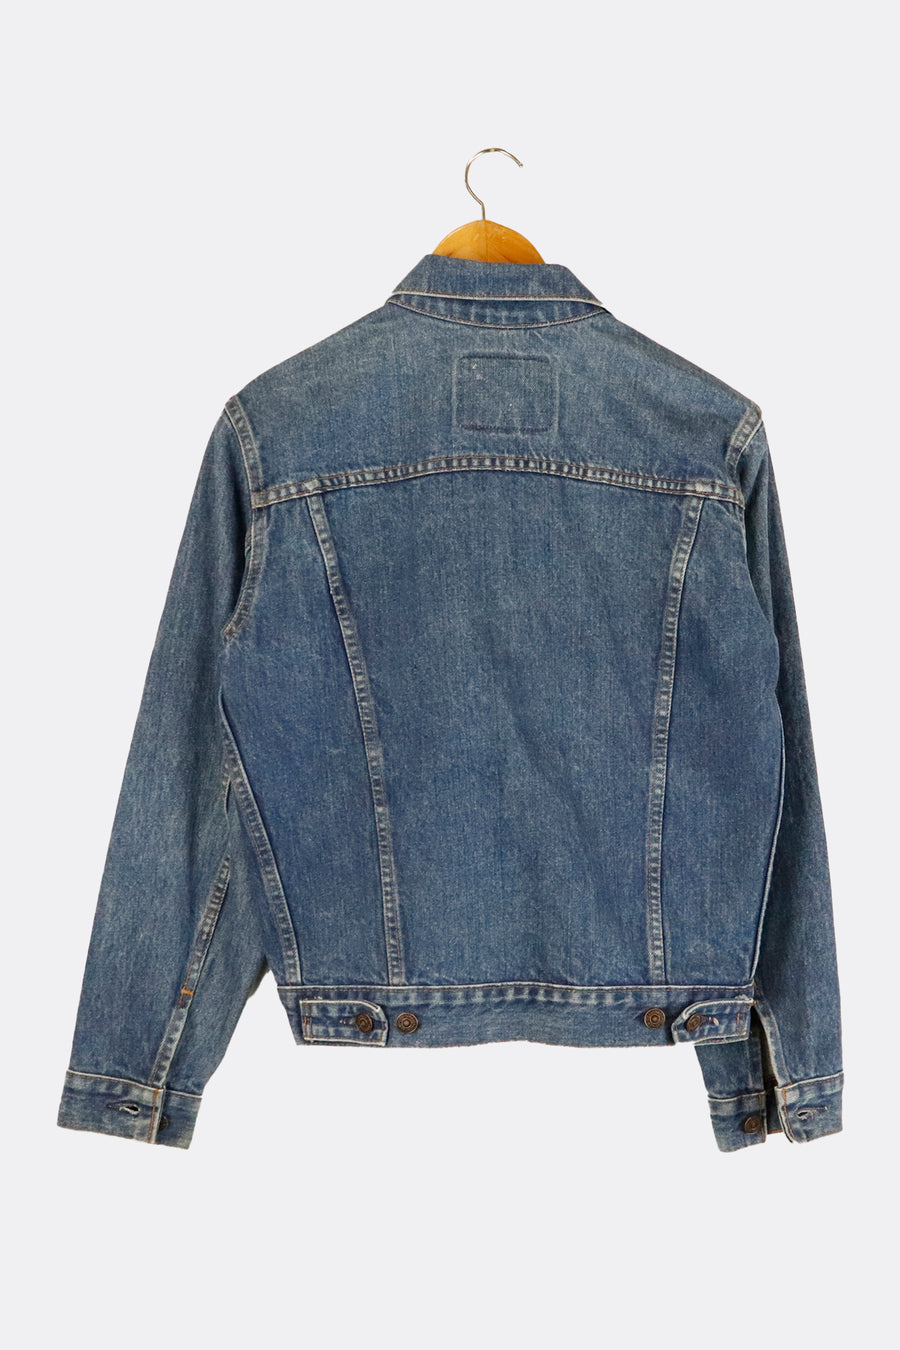 Vintage Levis Dark Denim Jacket Outerwear